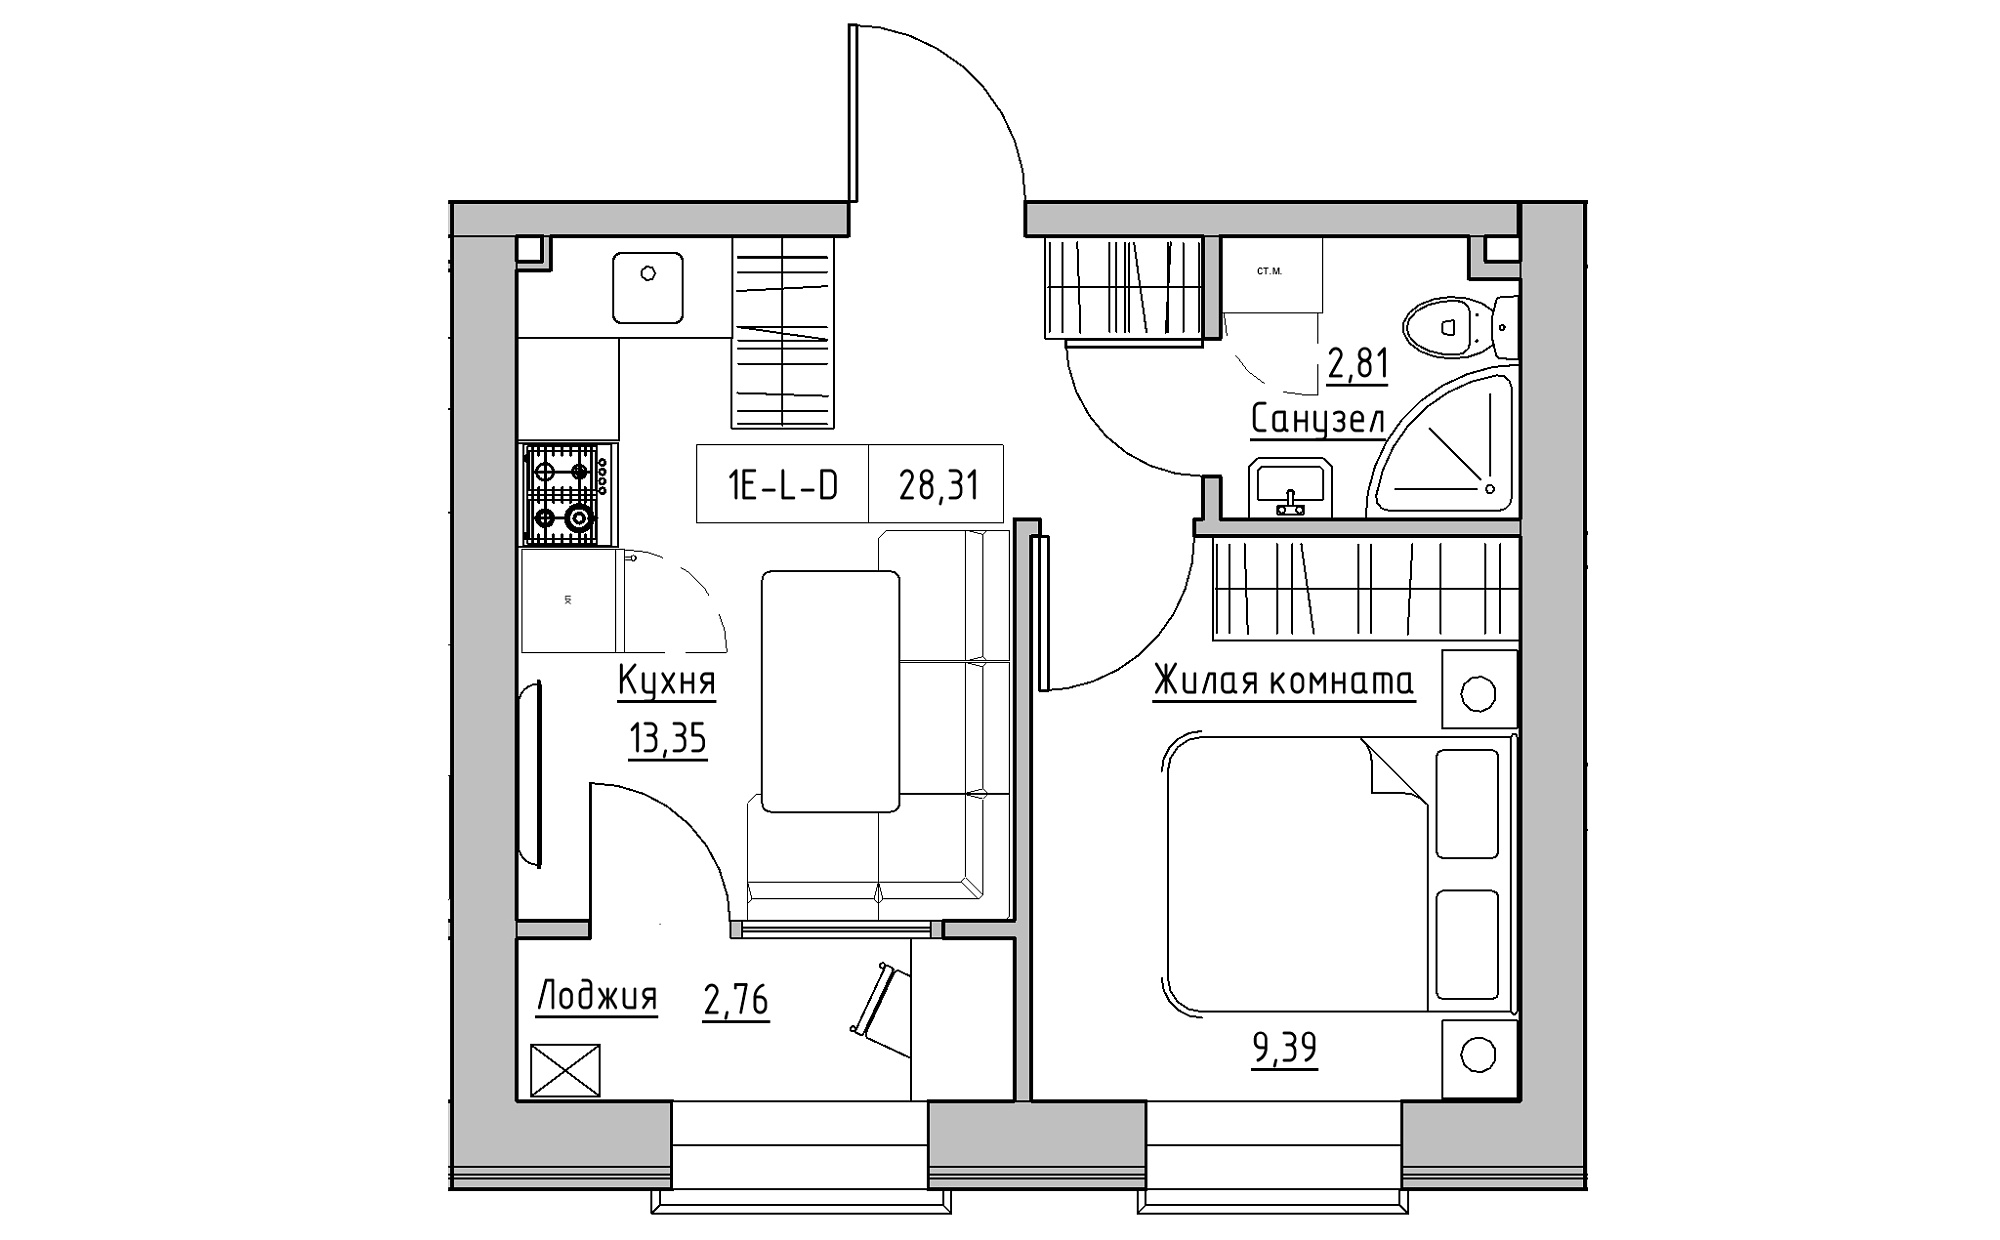 Планування 1-к квартира площею 28.31м2, KS-022-01/0001.